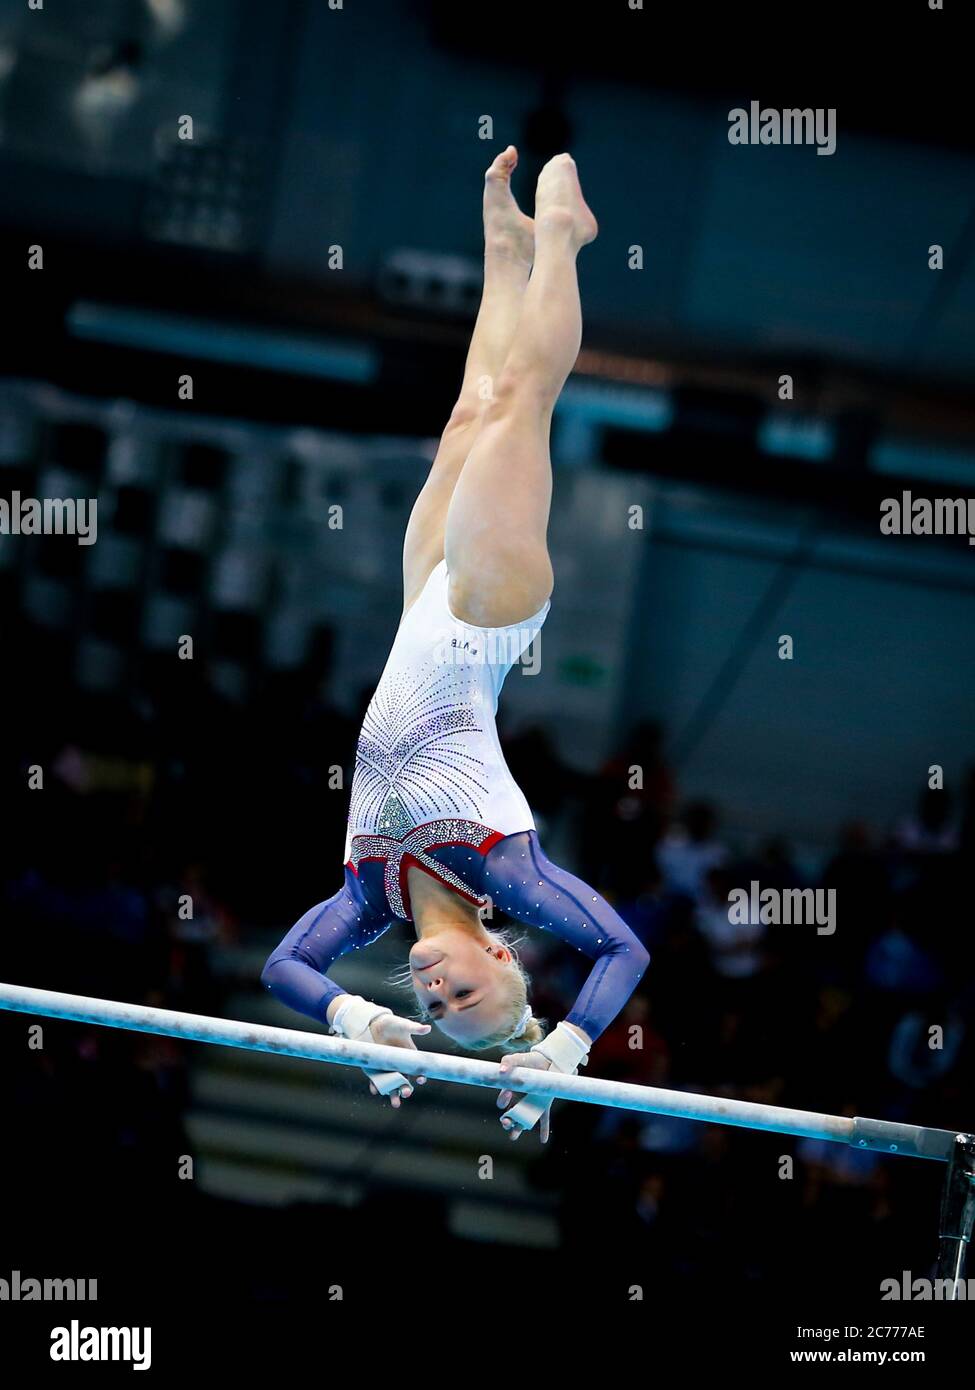 Szczecin, Pologne, 13 avril 2019 : Angelina Melnikova de Russie se livre dans les barreaux inégaux lors des championnats de gymnastique artistique Banque D'Images